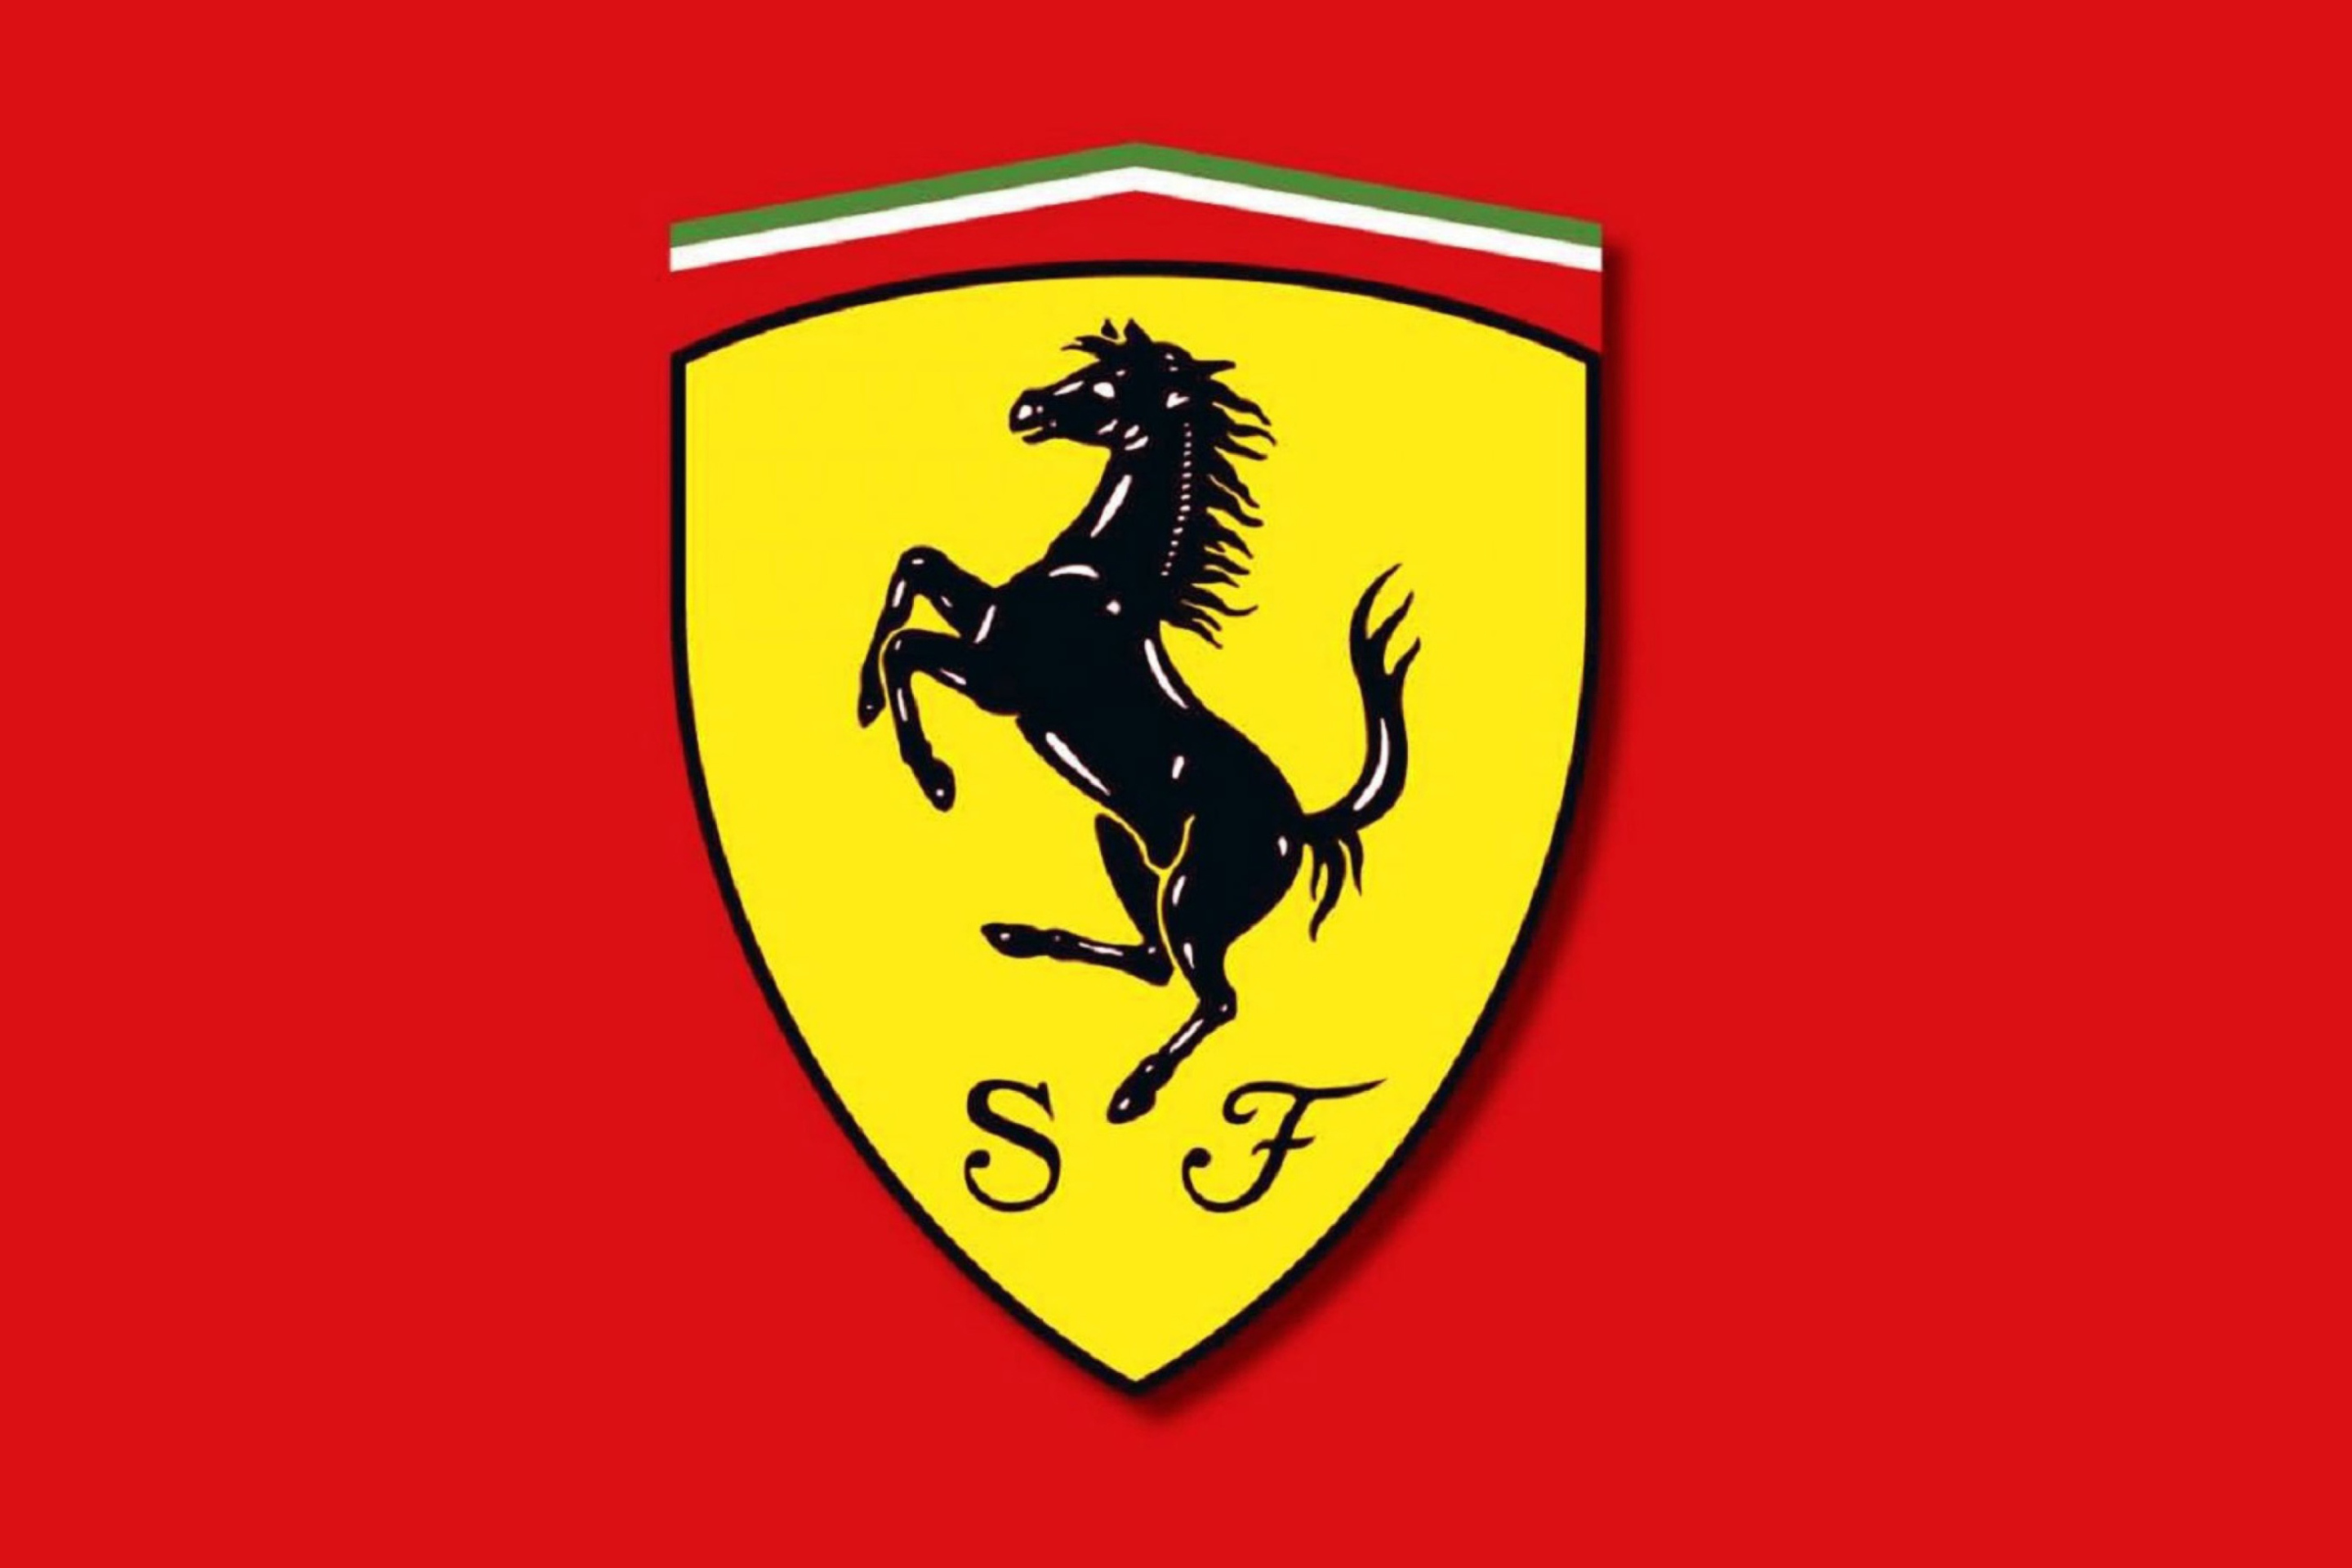 Ferrari Emblem wallpaper 2880x1920